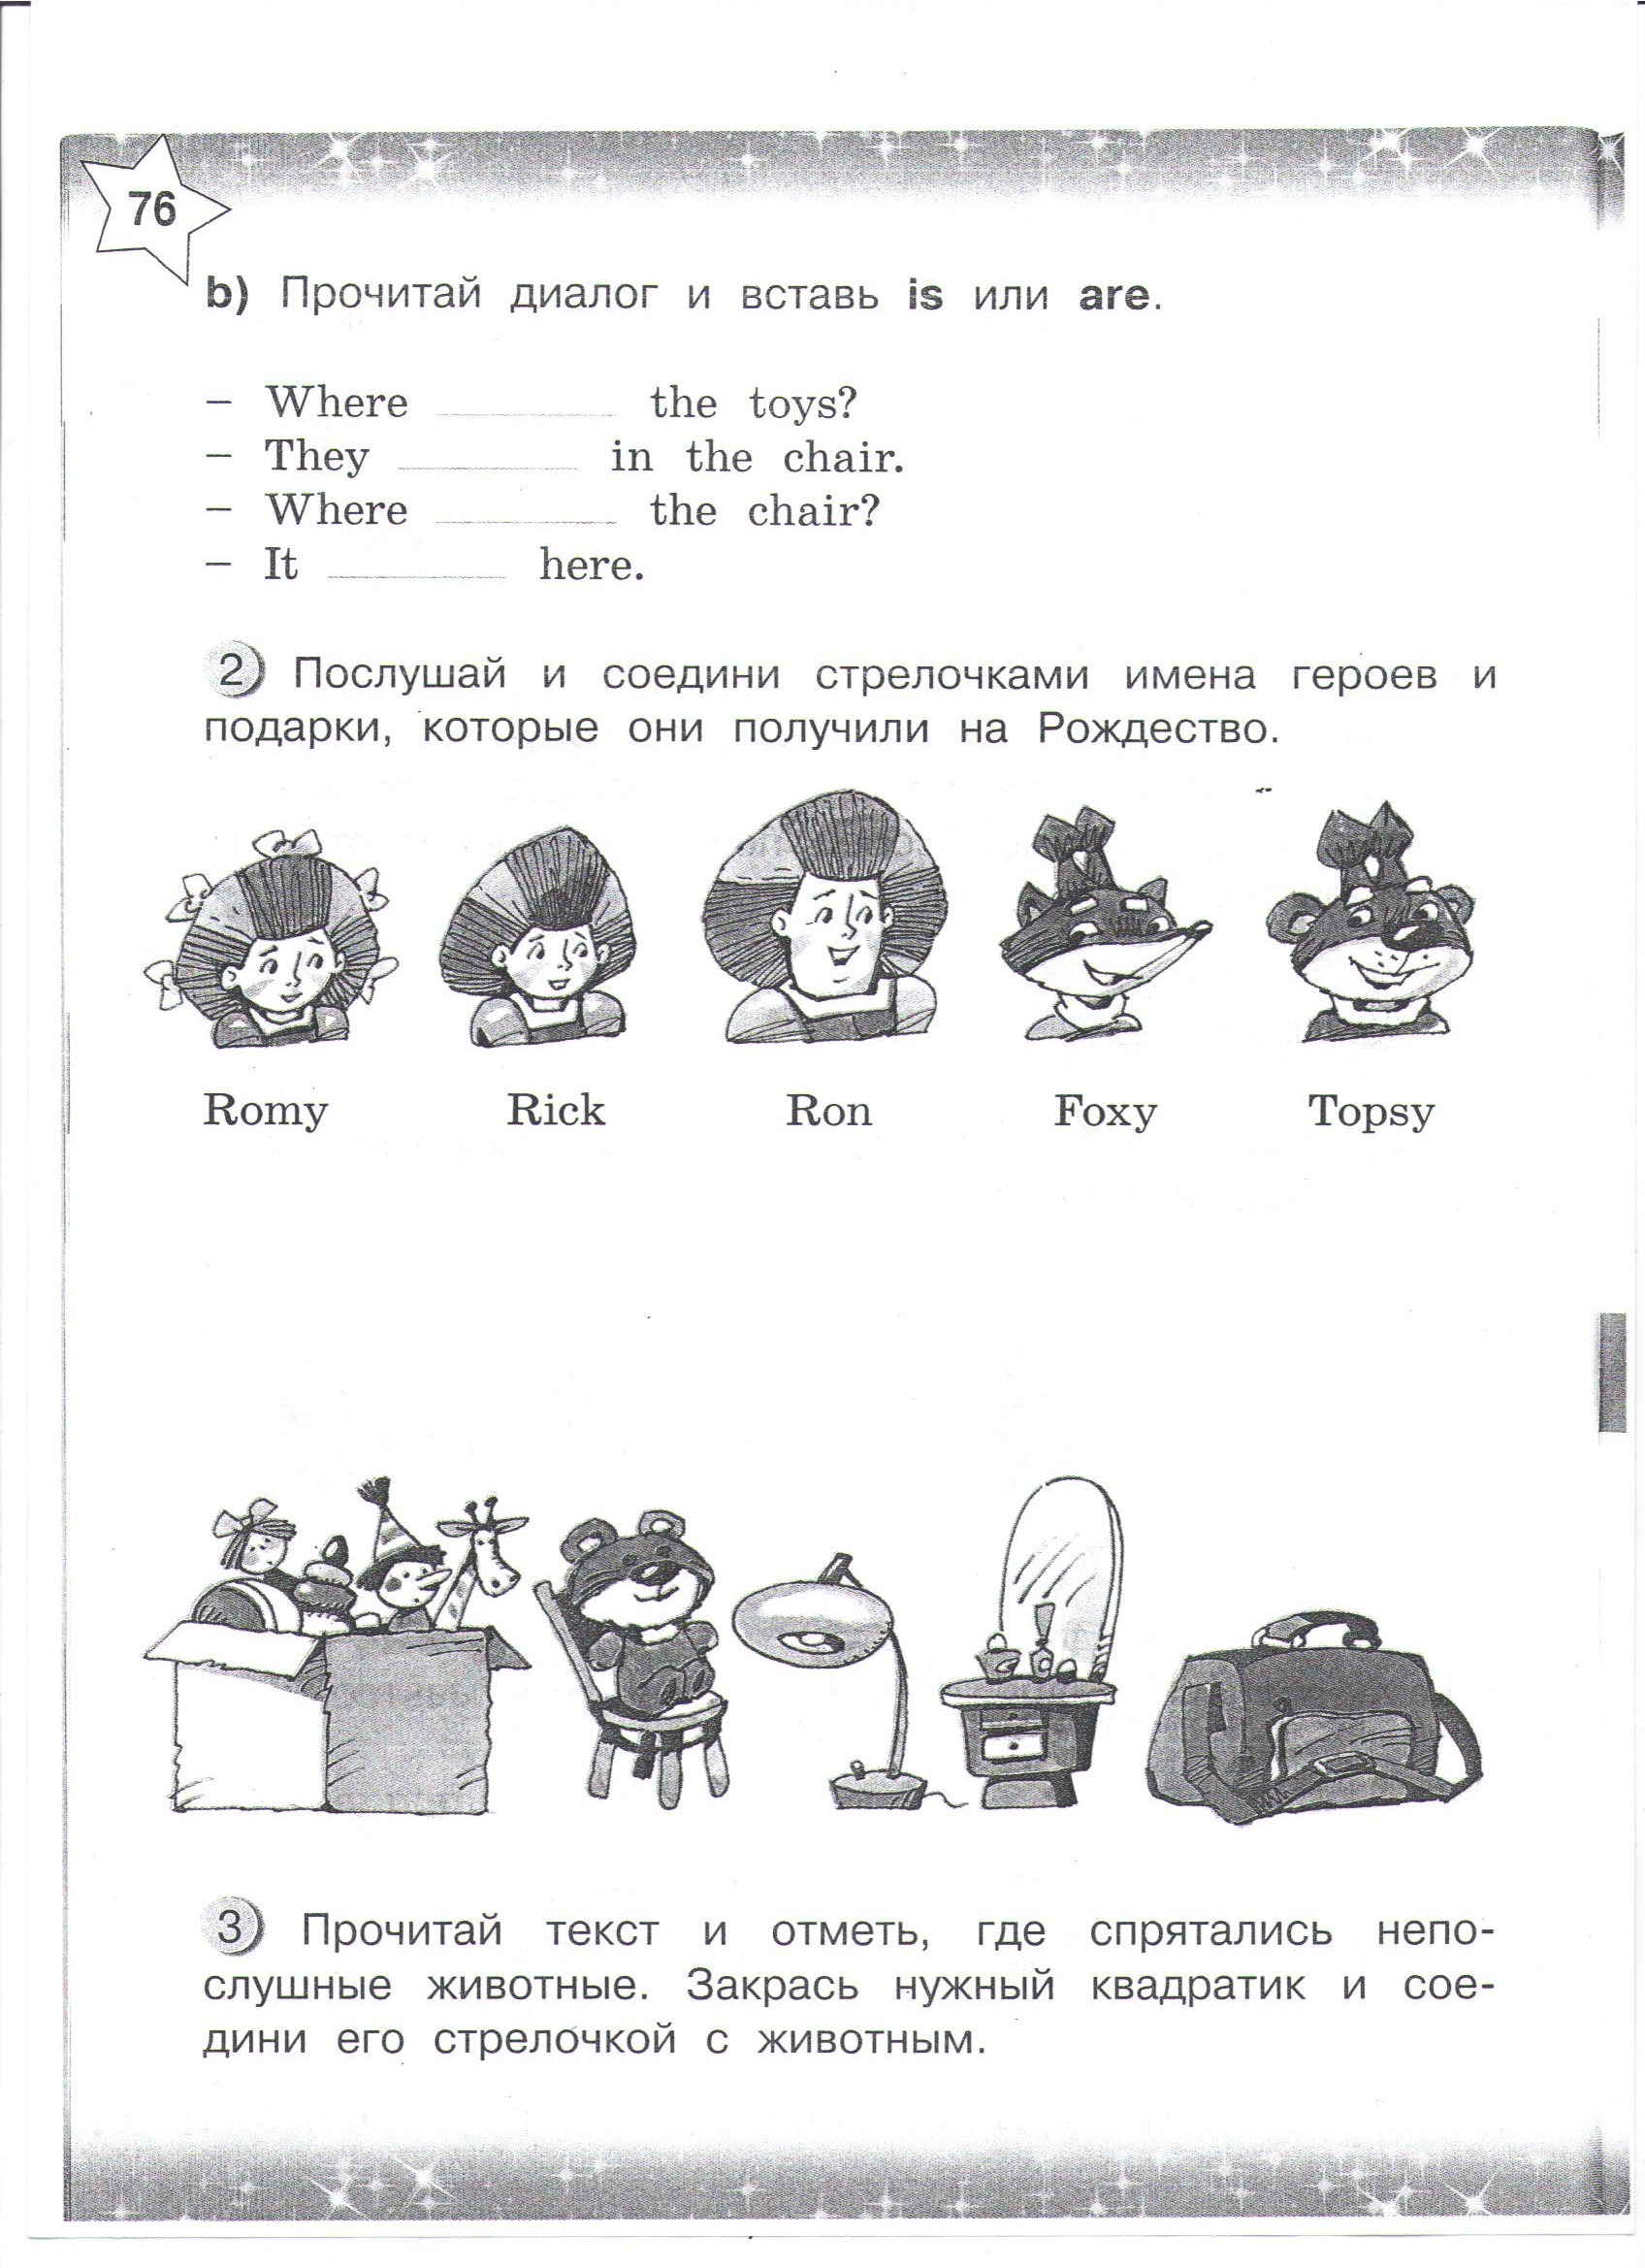 Контрольная работа по иностранному языку (английский язык) для 2 класса к учебнику С.Г.Тер-Минасова